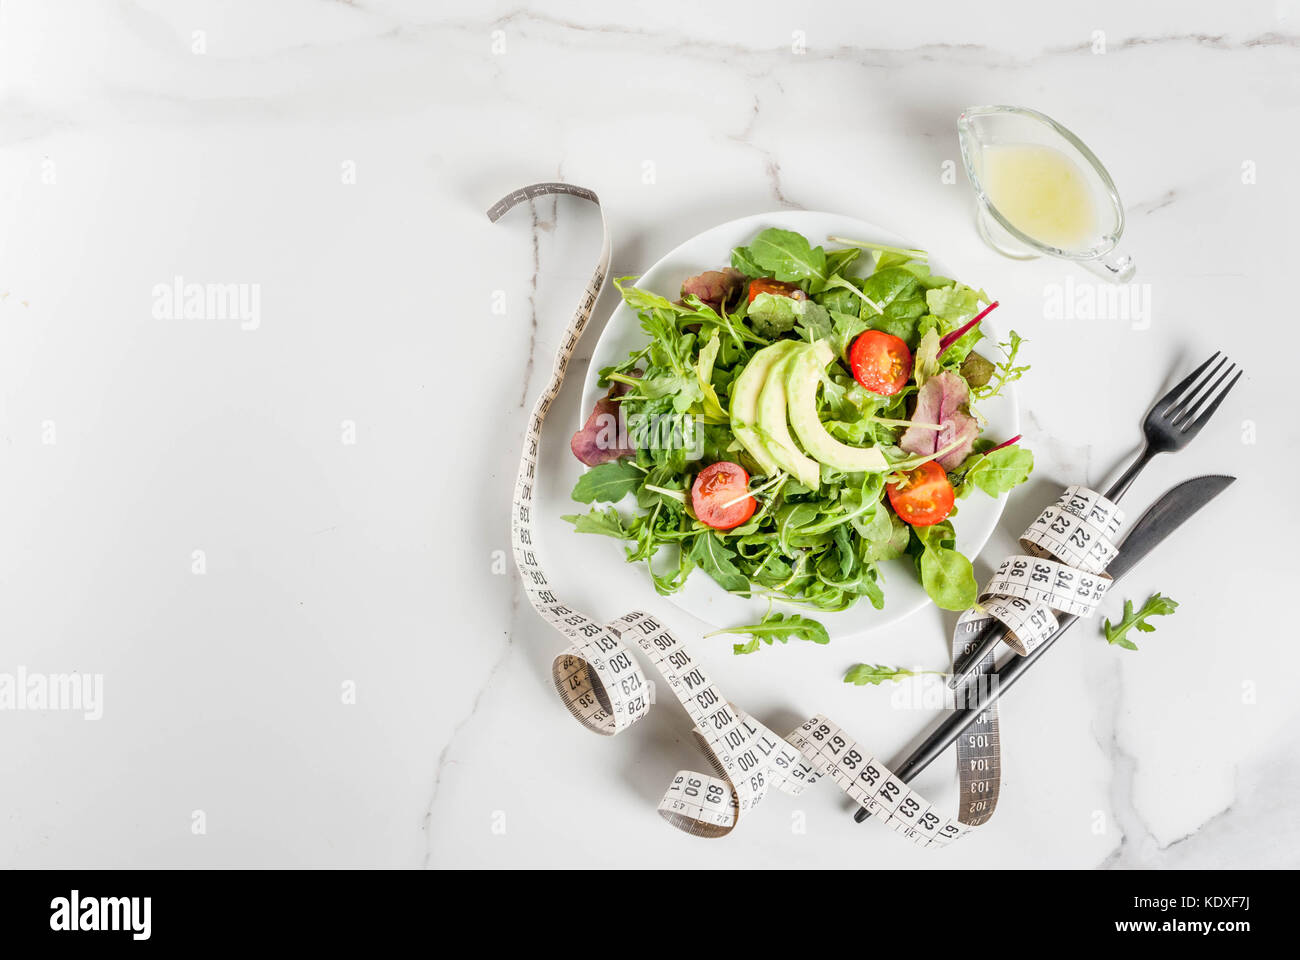 Una sana dieta bilanciata concetto, perdita di peso, il conteggio delle calorie. piastra con insalata verde foglie, pomodori e avocado con dressing di yogurt bianco, tabella, con Foto Stock